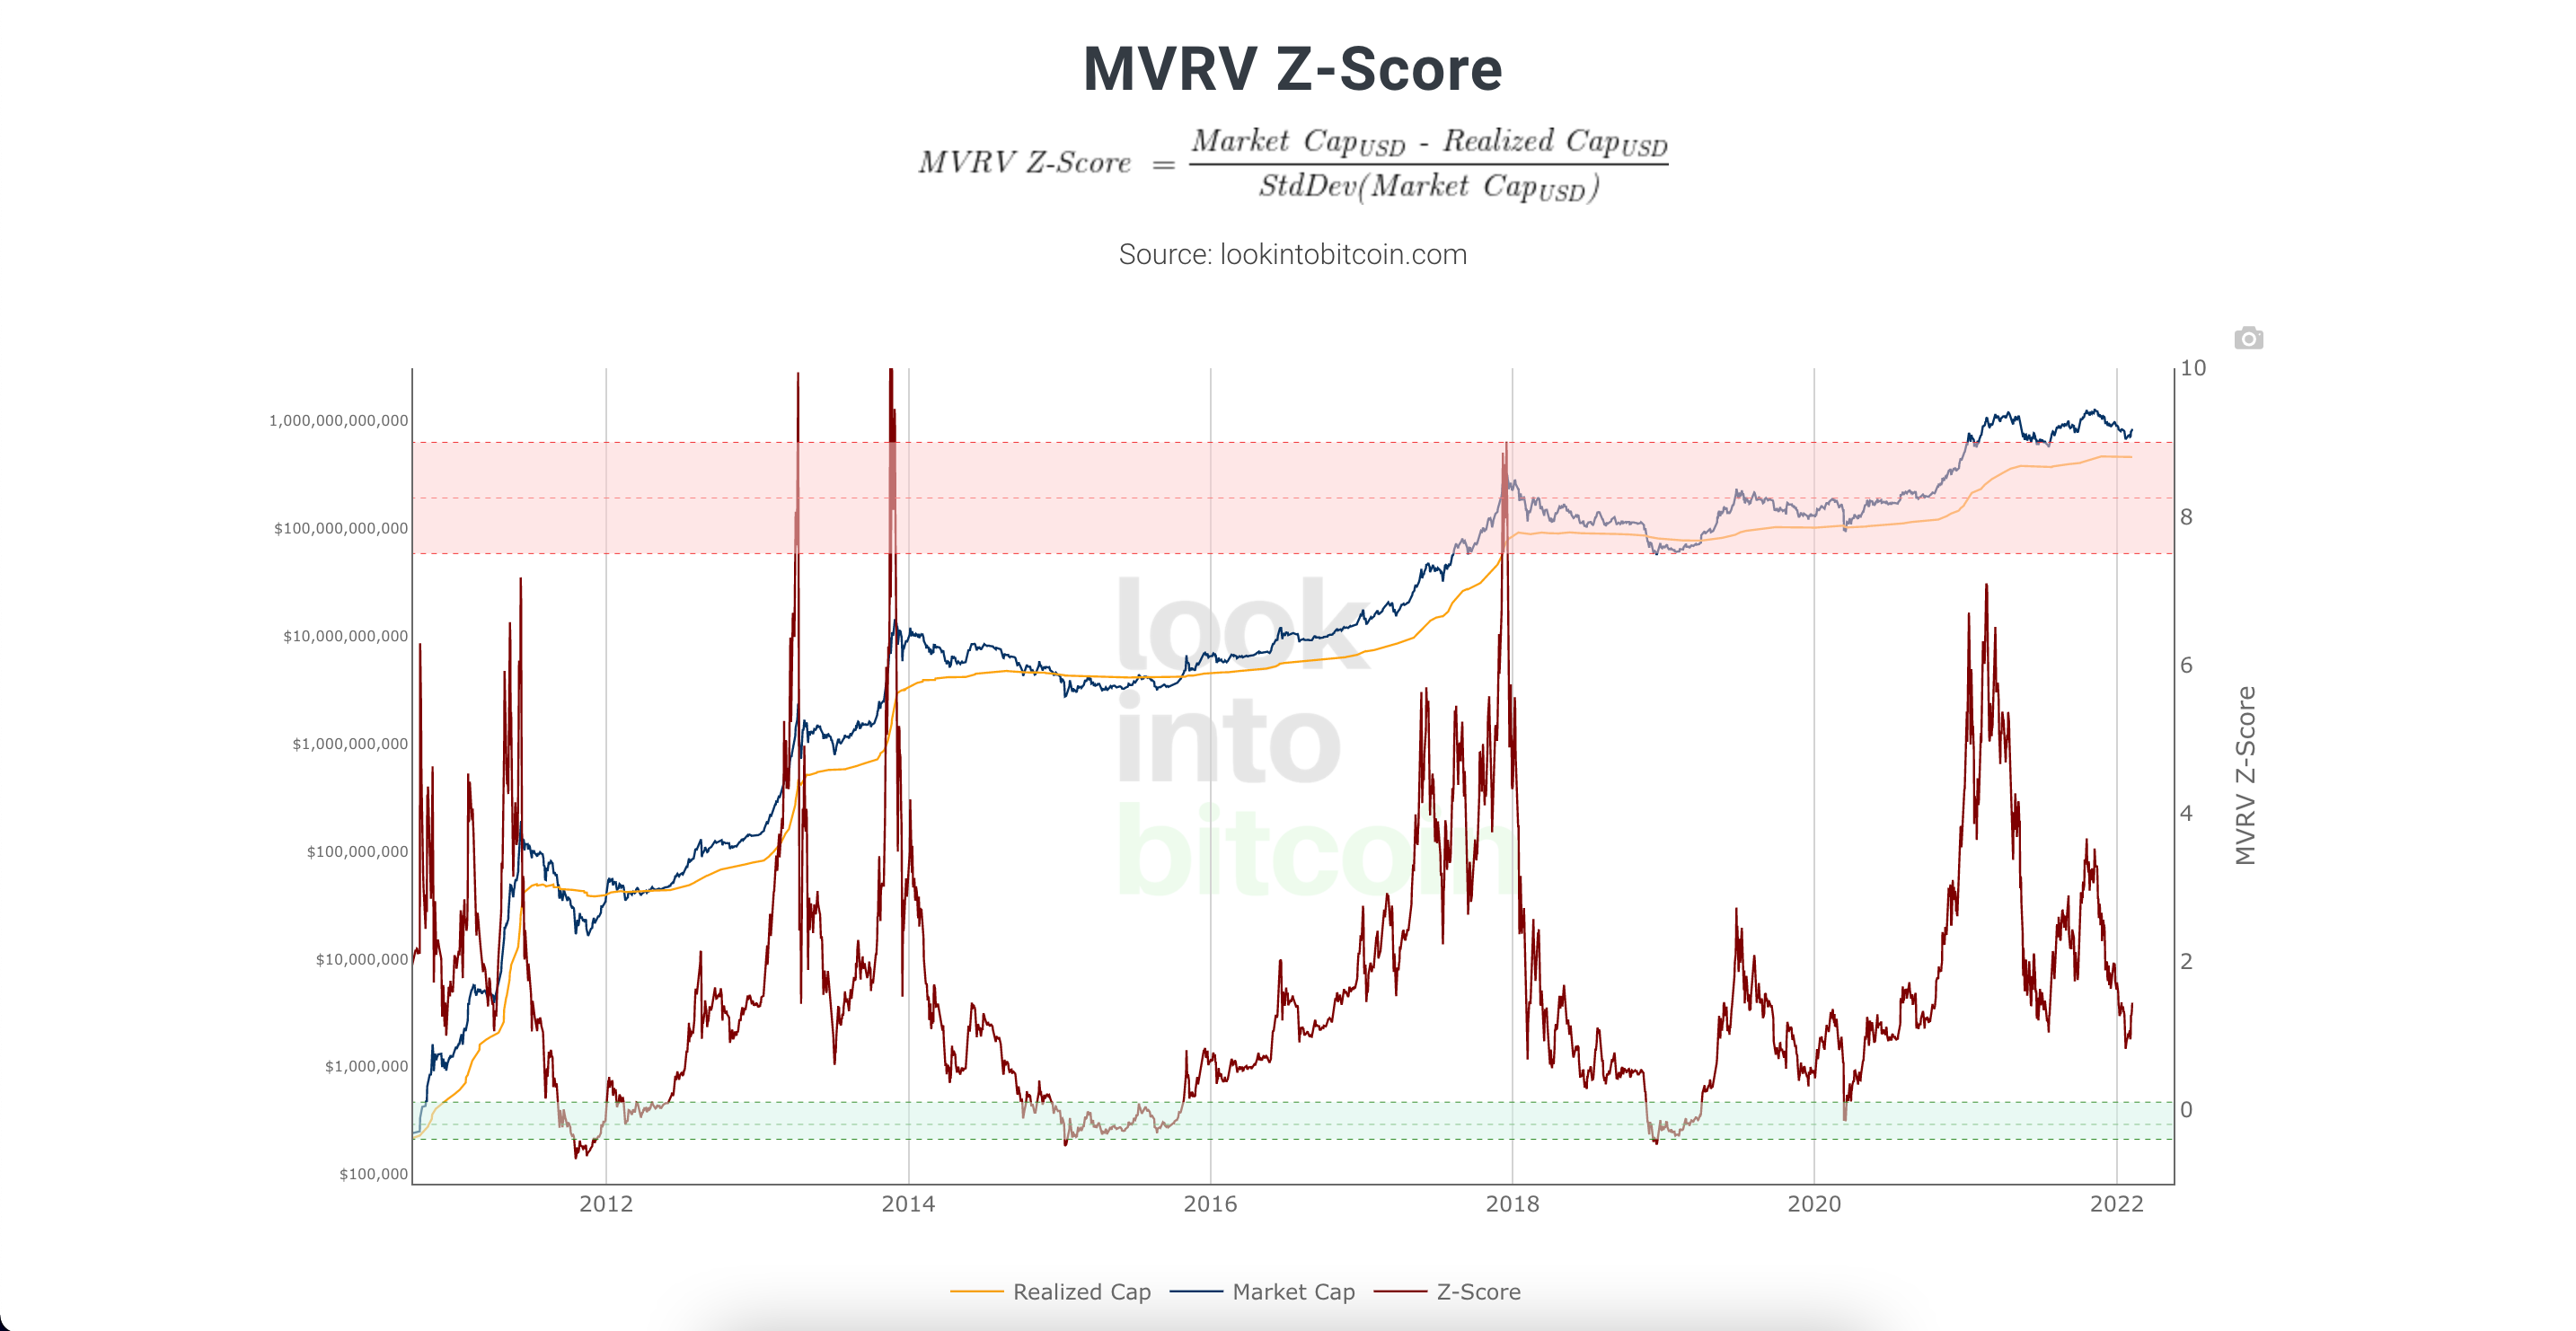 market value realized value z-score ekran resmi 2022 02 08 16.46.50